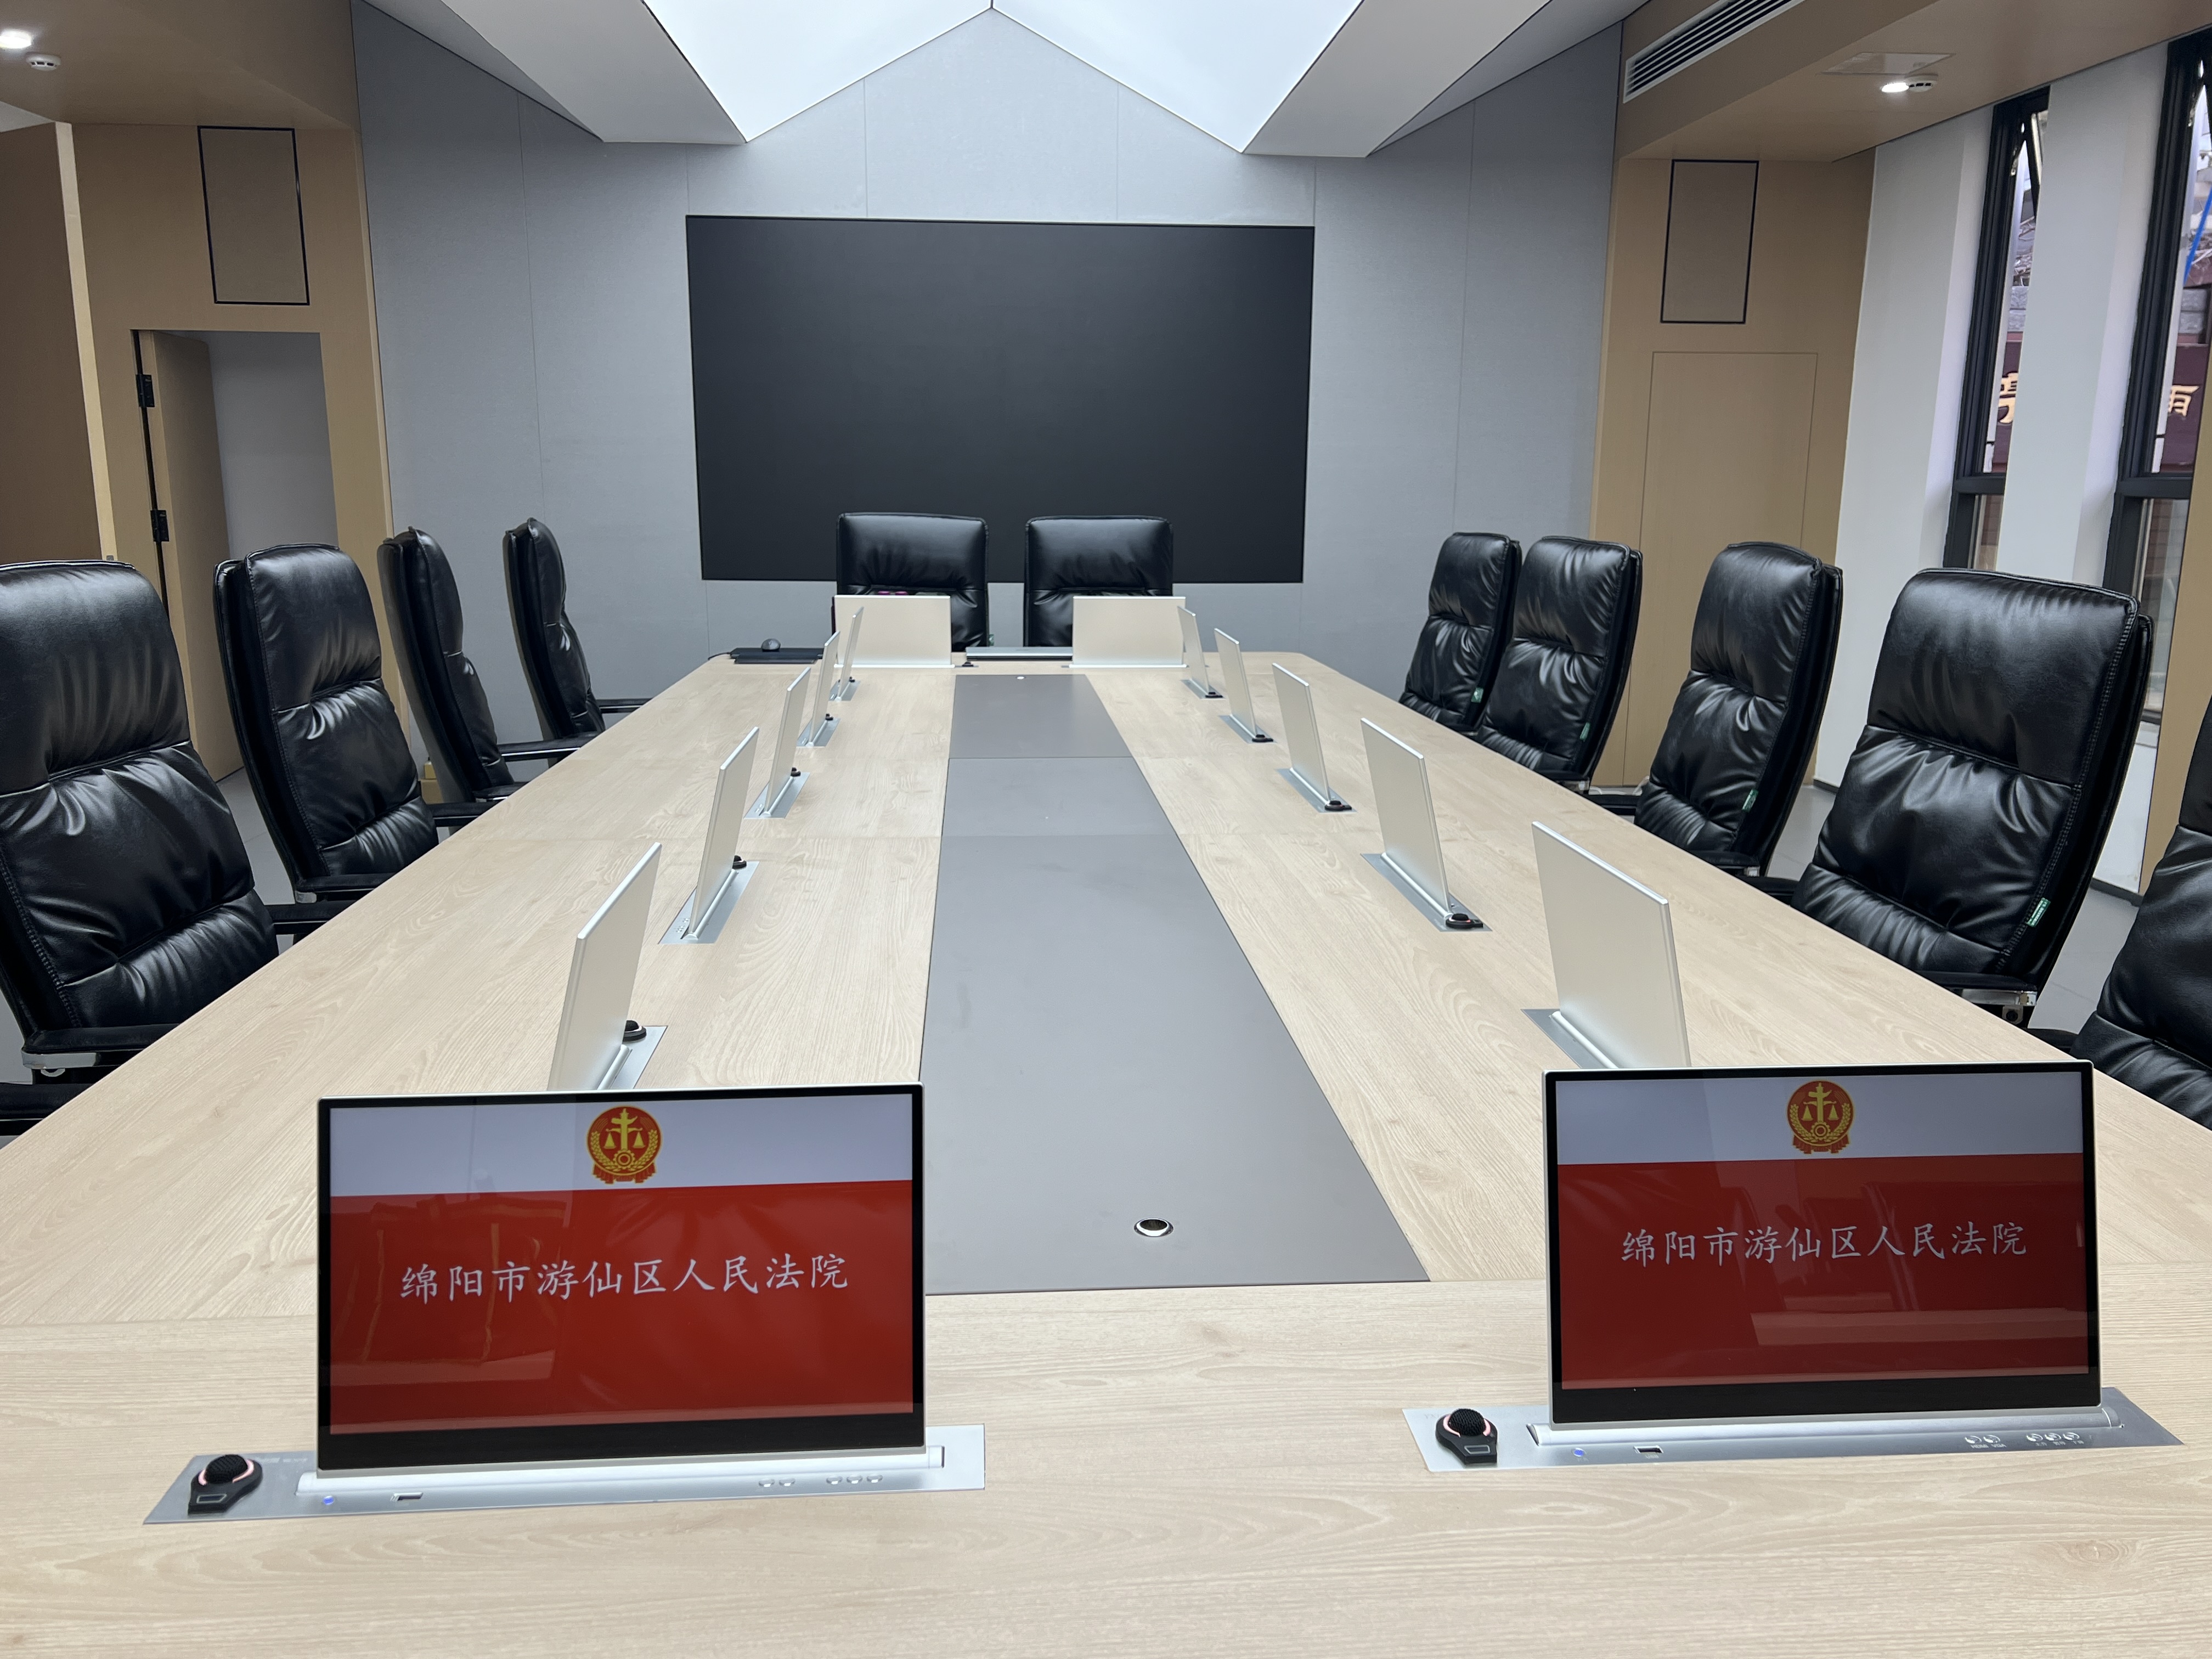 绵阳市游仙区人民法院无纸化会议室改造项目